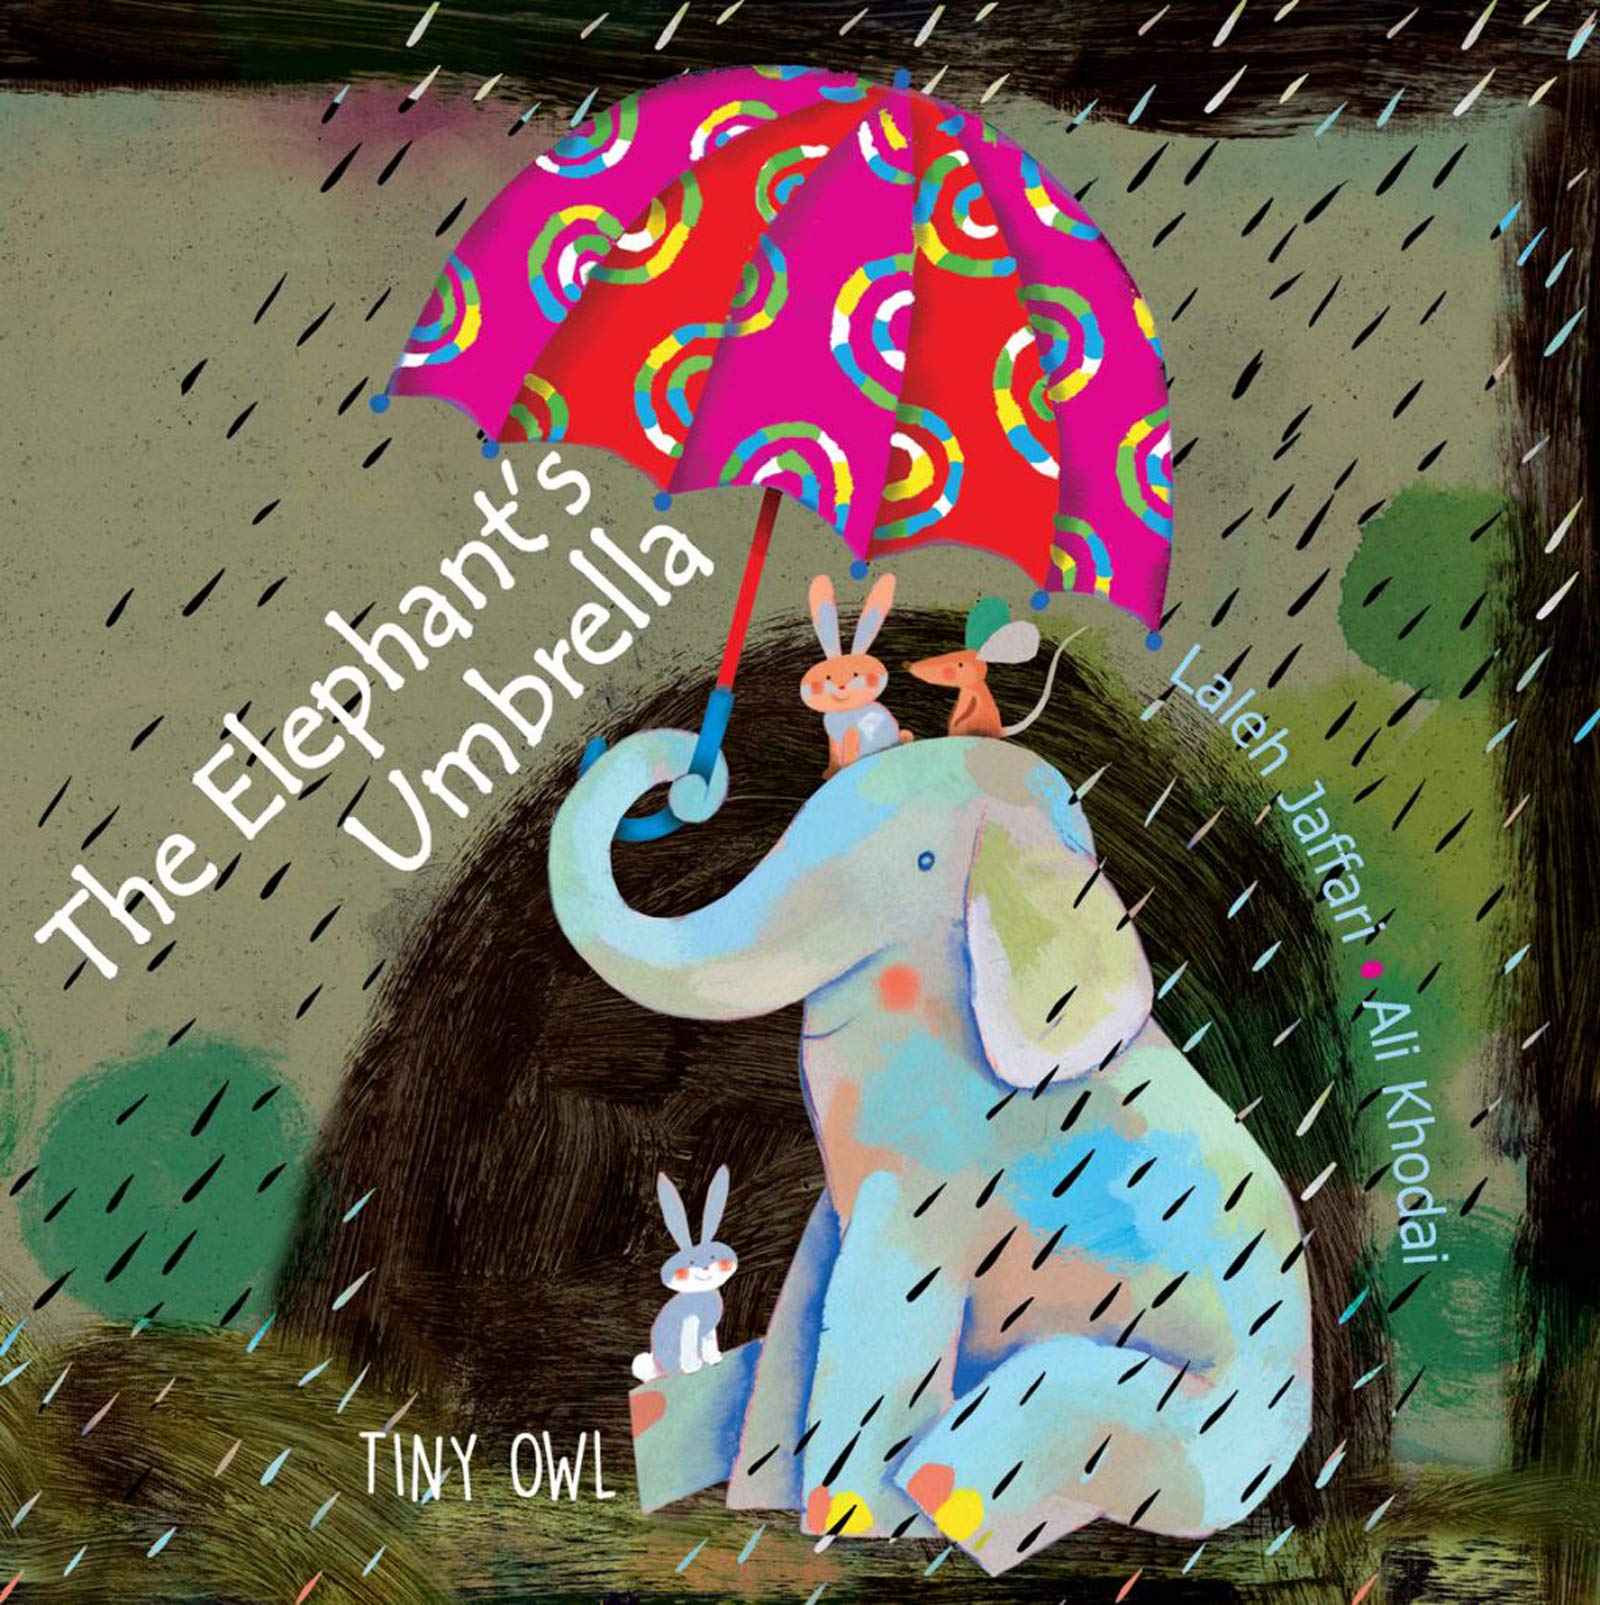 The Elephant's Umbrella